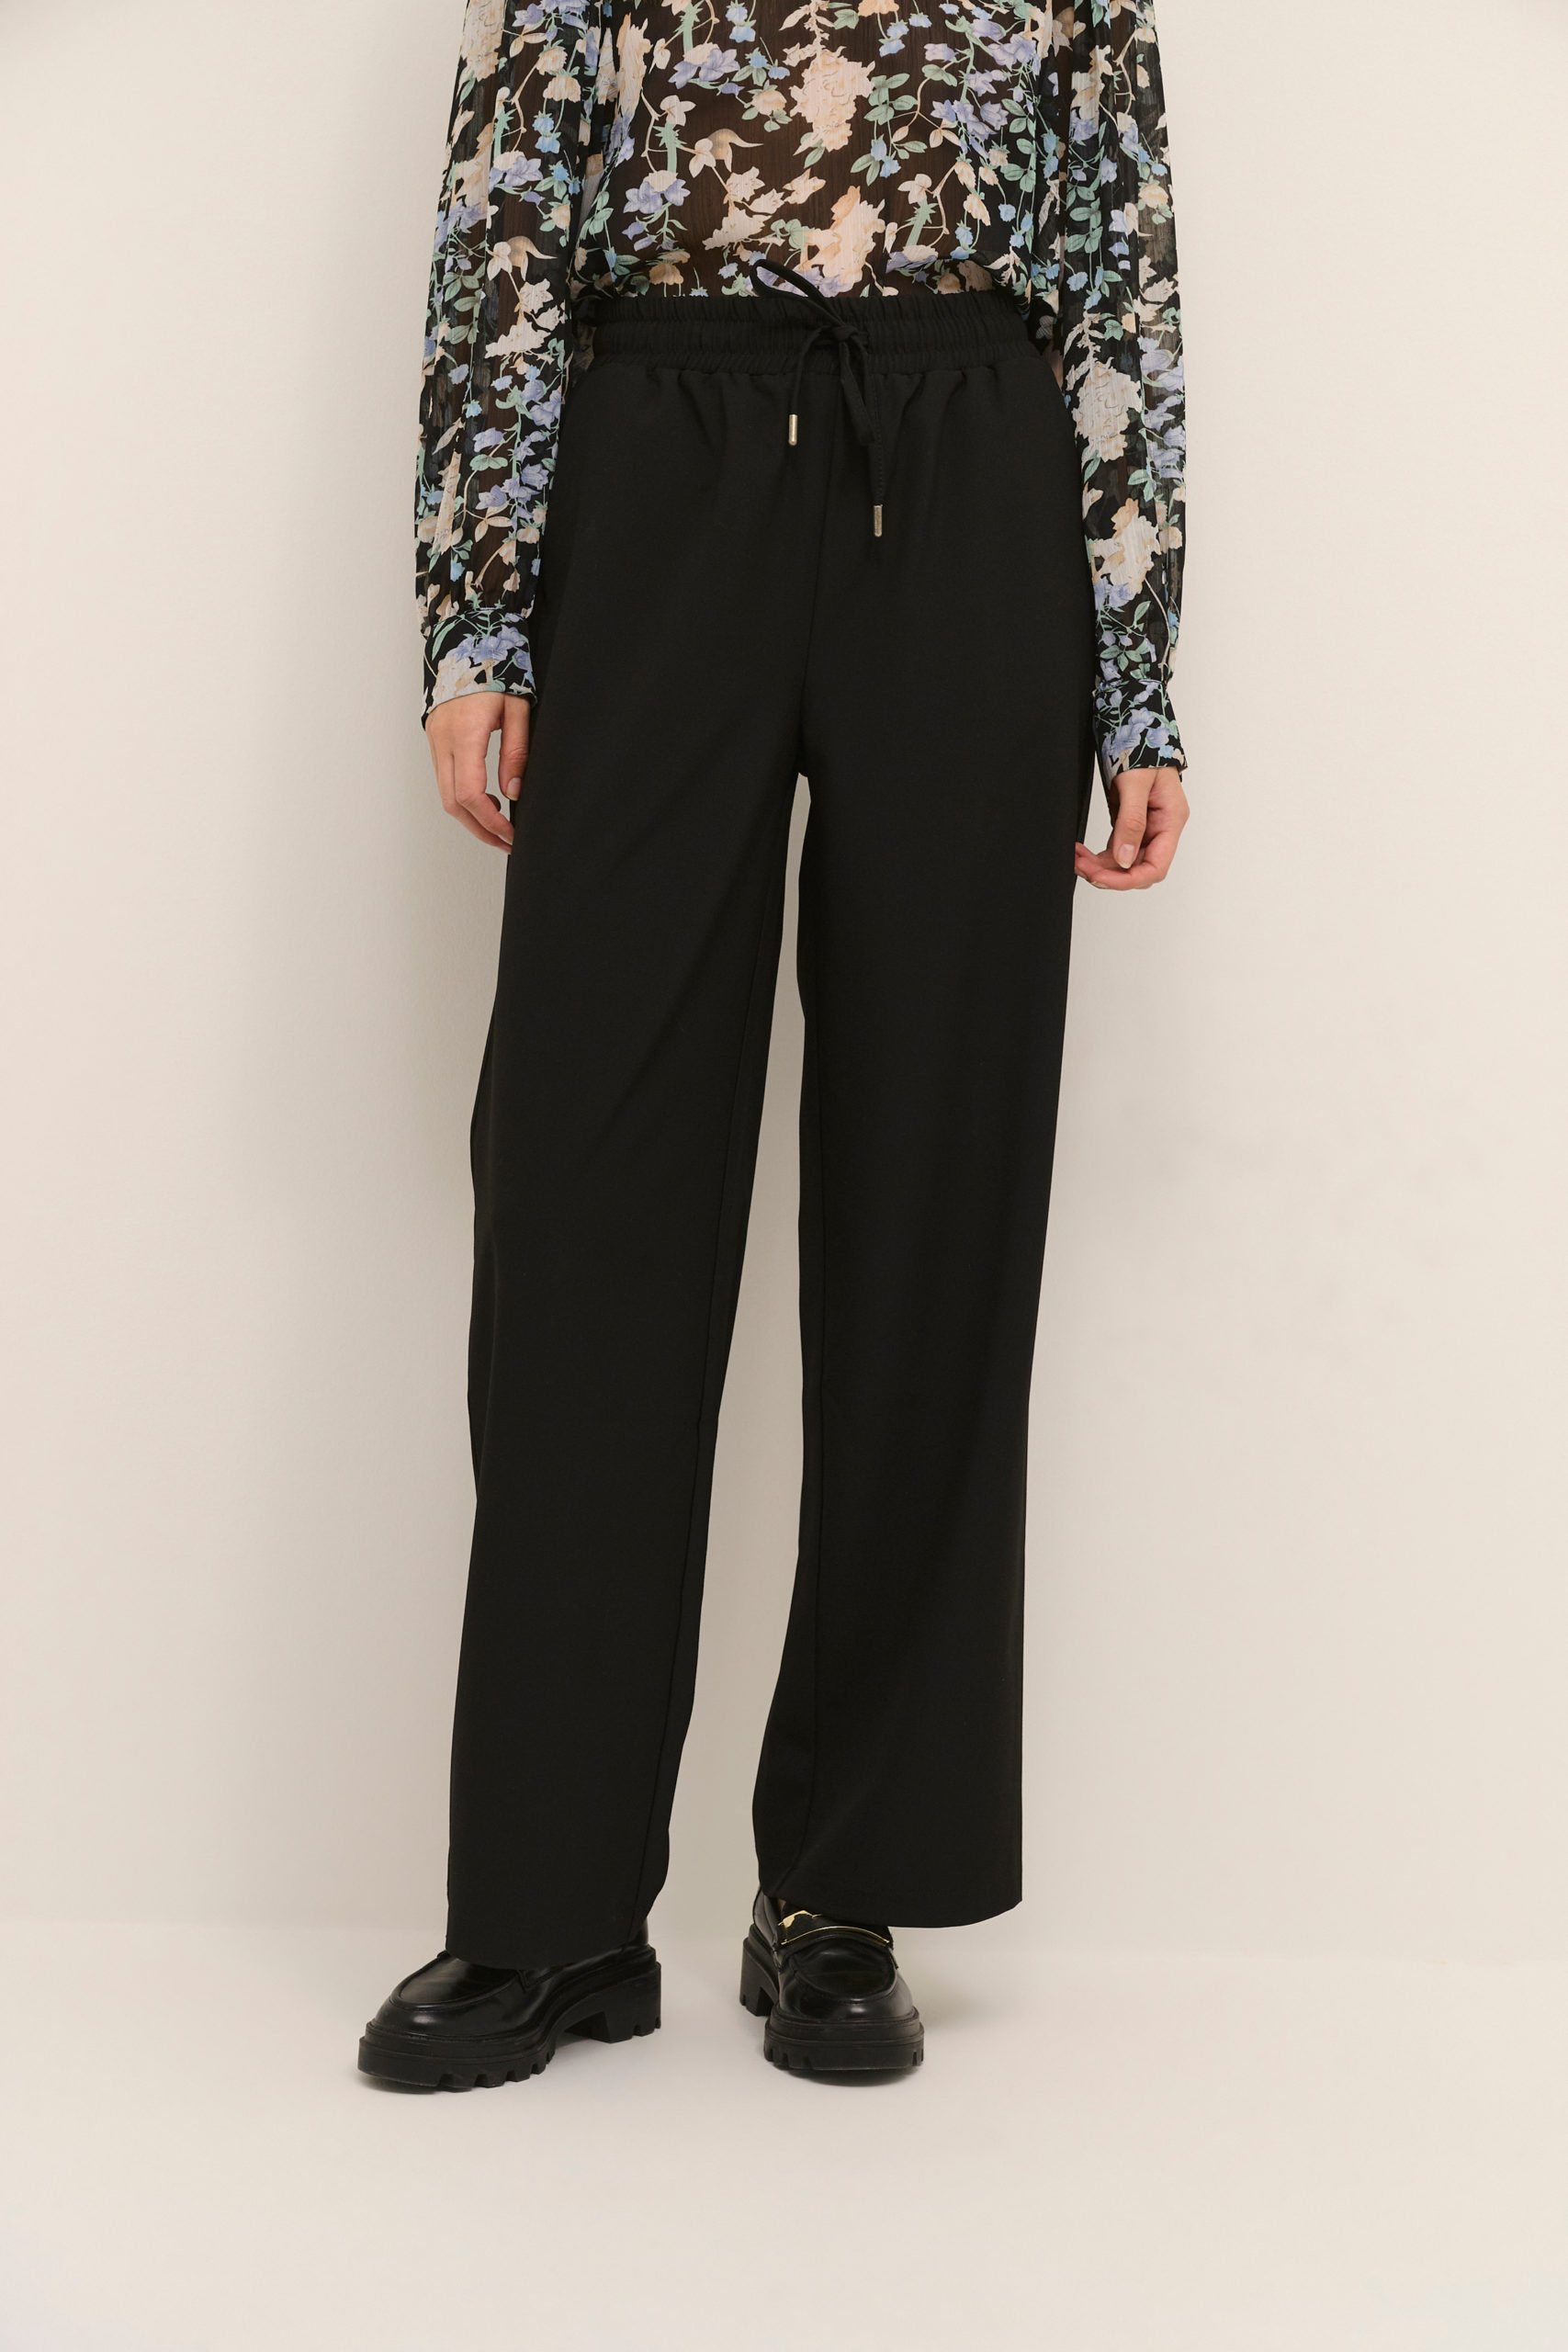 KAcolette Pants Suiting black front